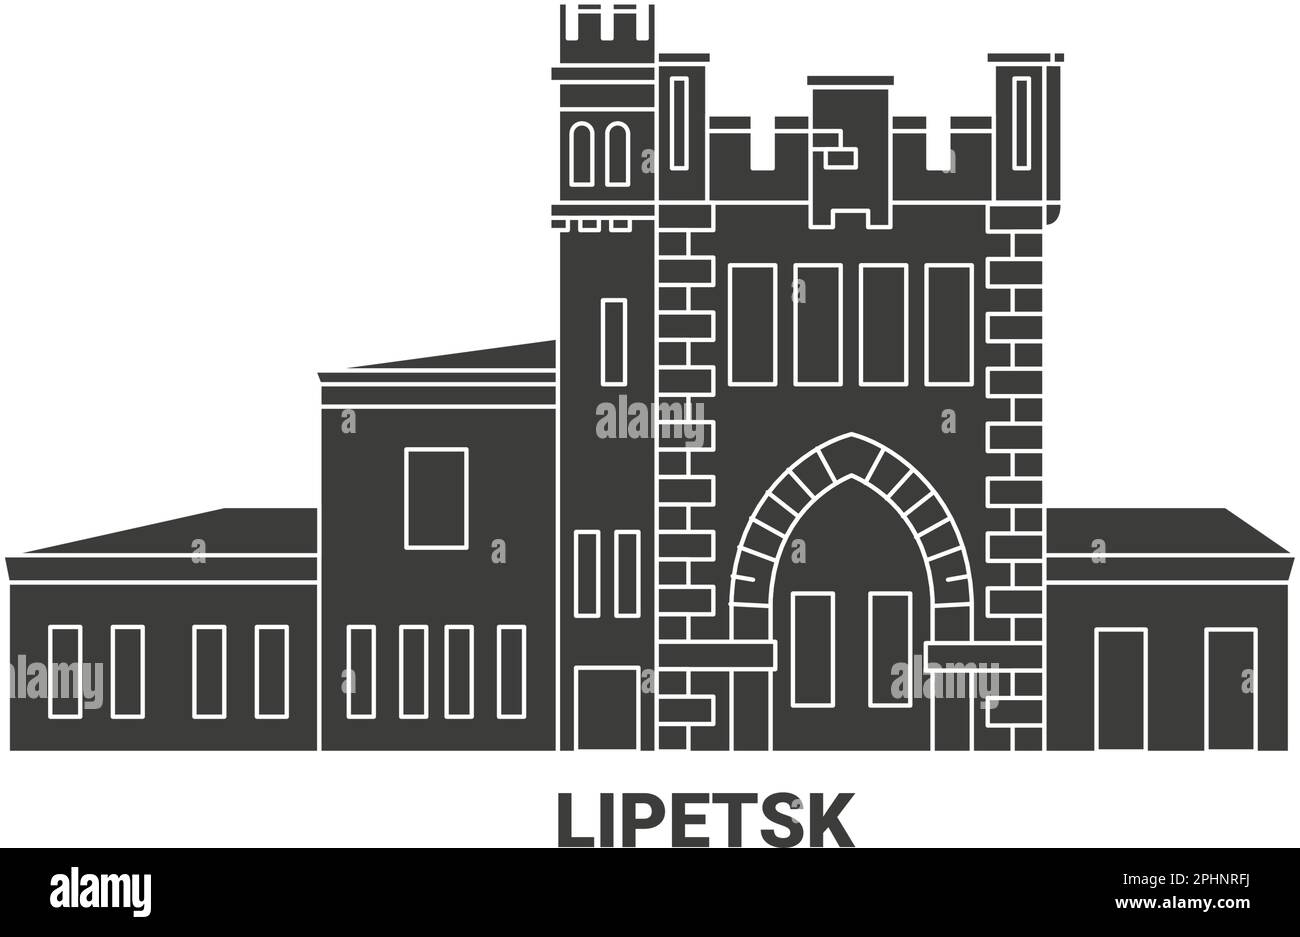 Rusia, Lipetsk ilustración vectorial de referencia de viaje Ilustración del Vector